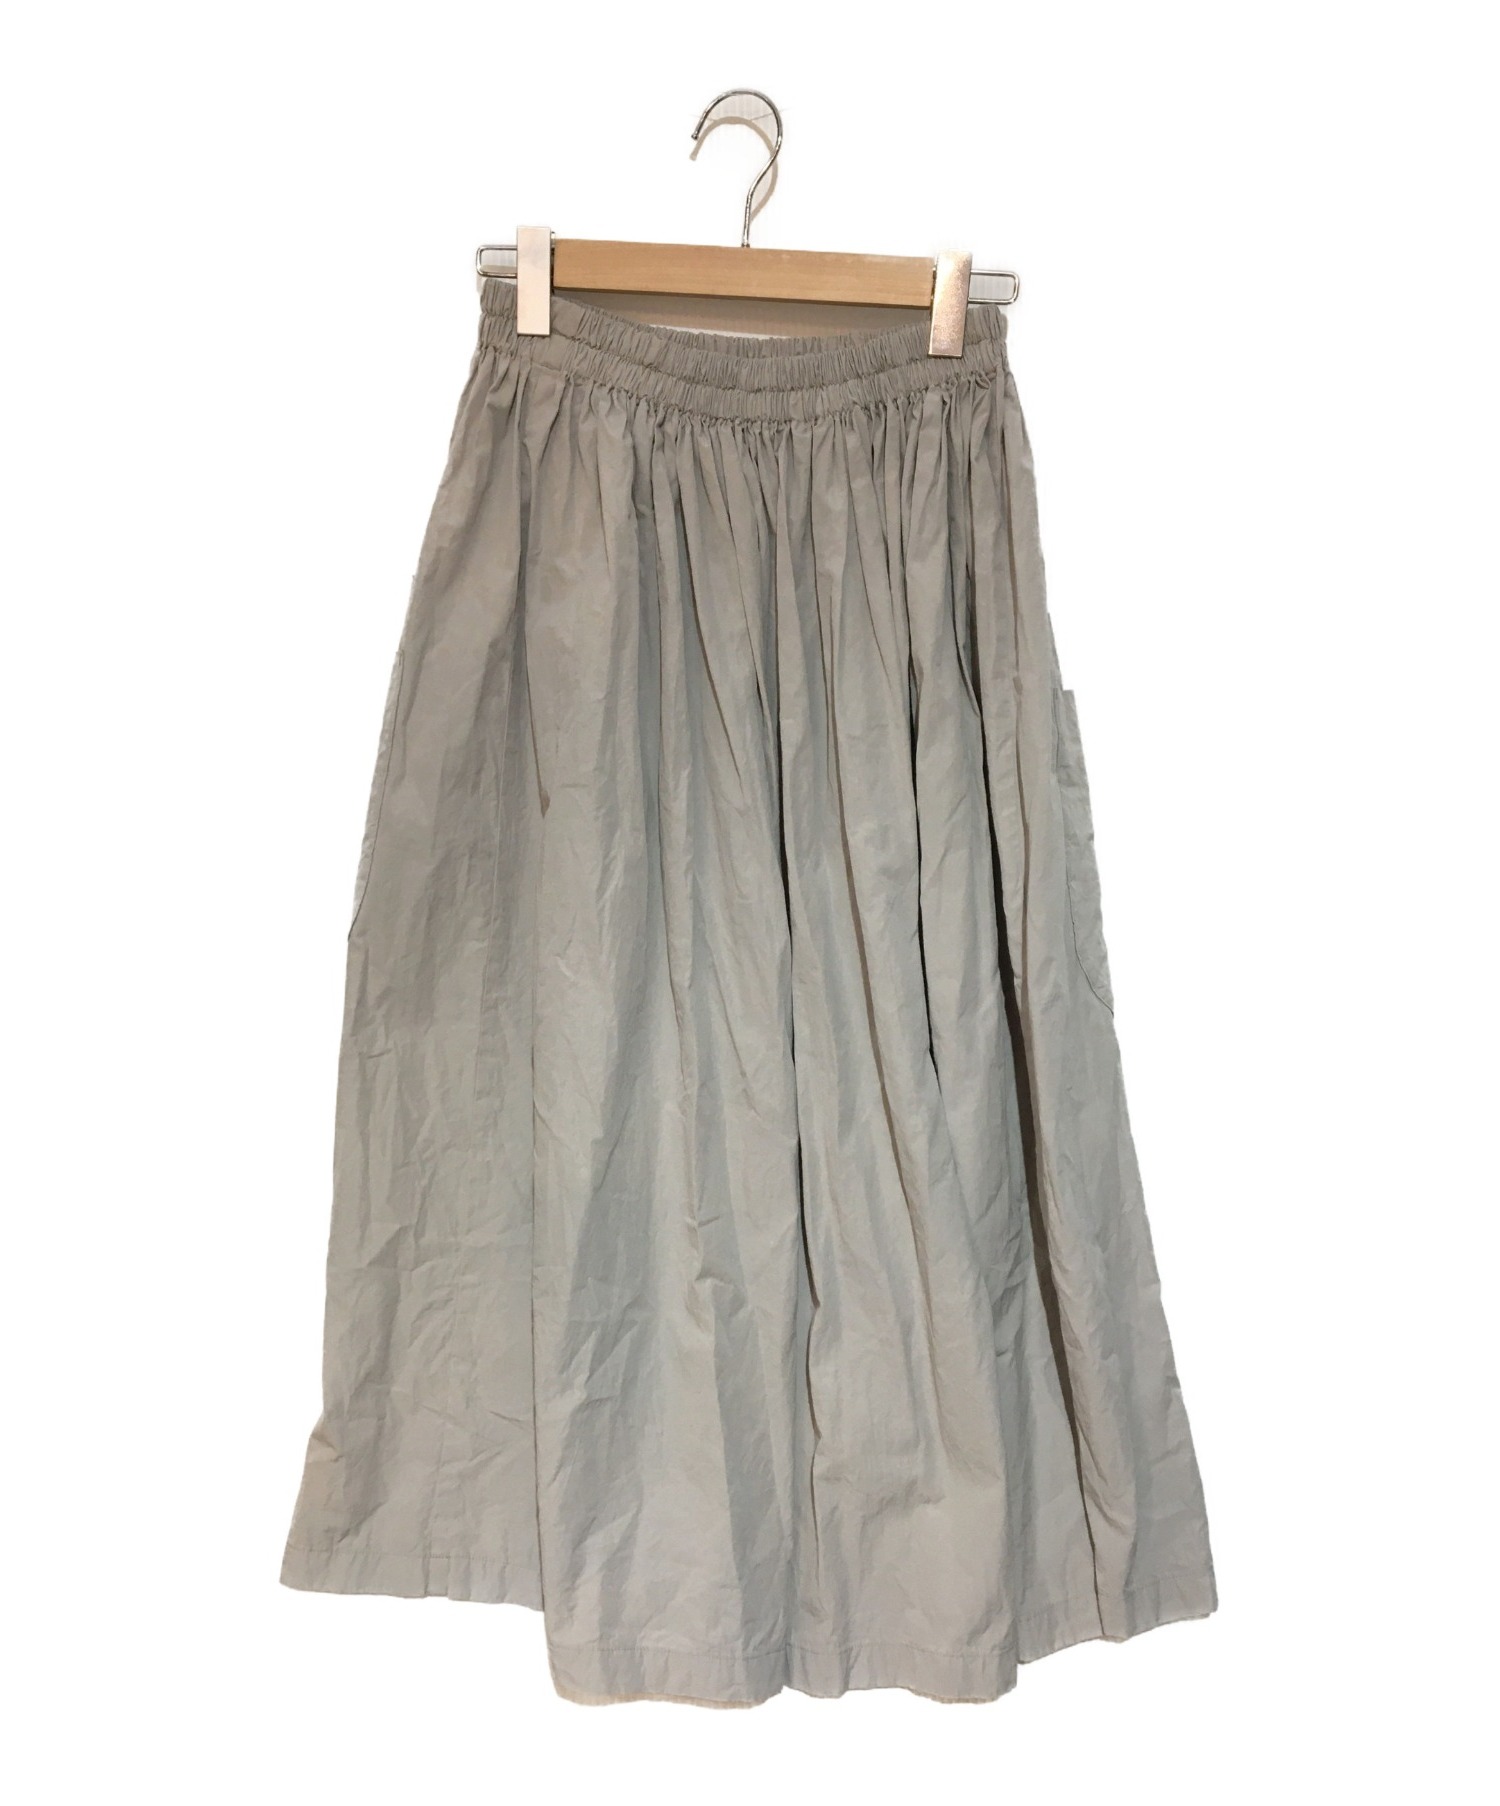 homspun (ホームスパン) コンパクトウェザーダブルポケットギャザースカート グレー サイズ:M